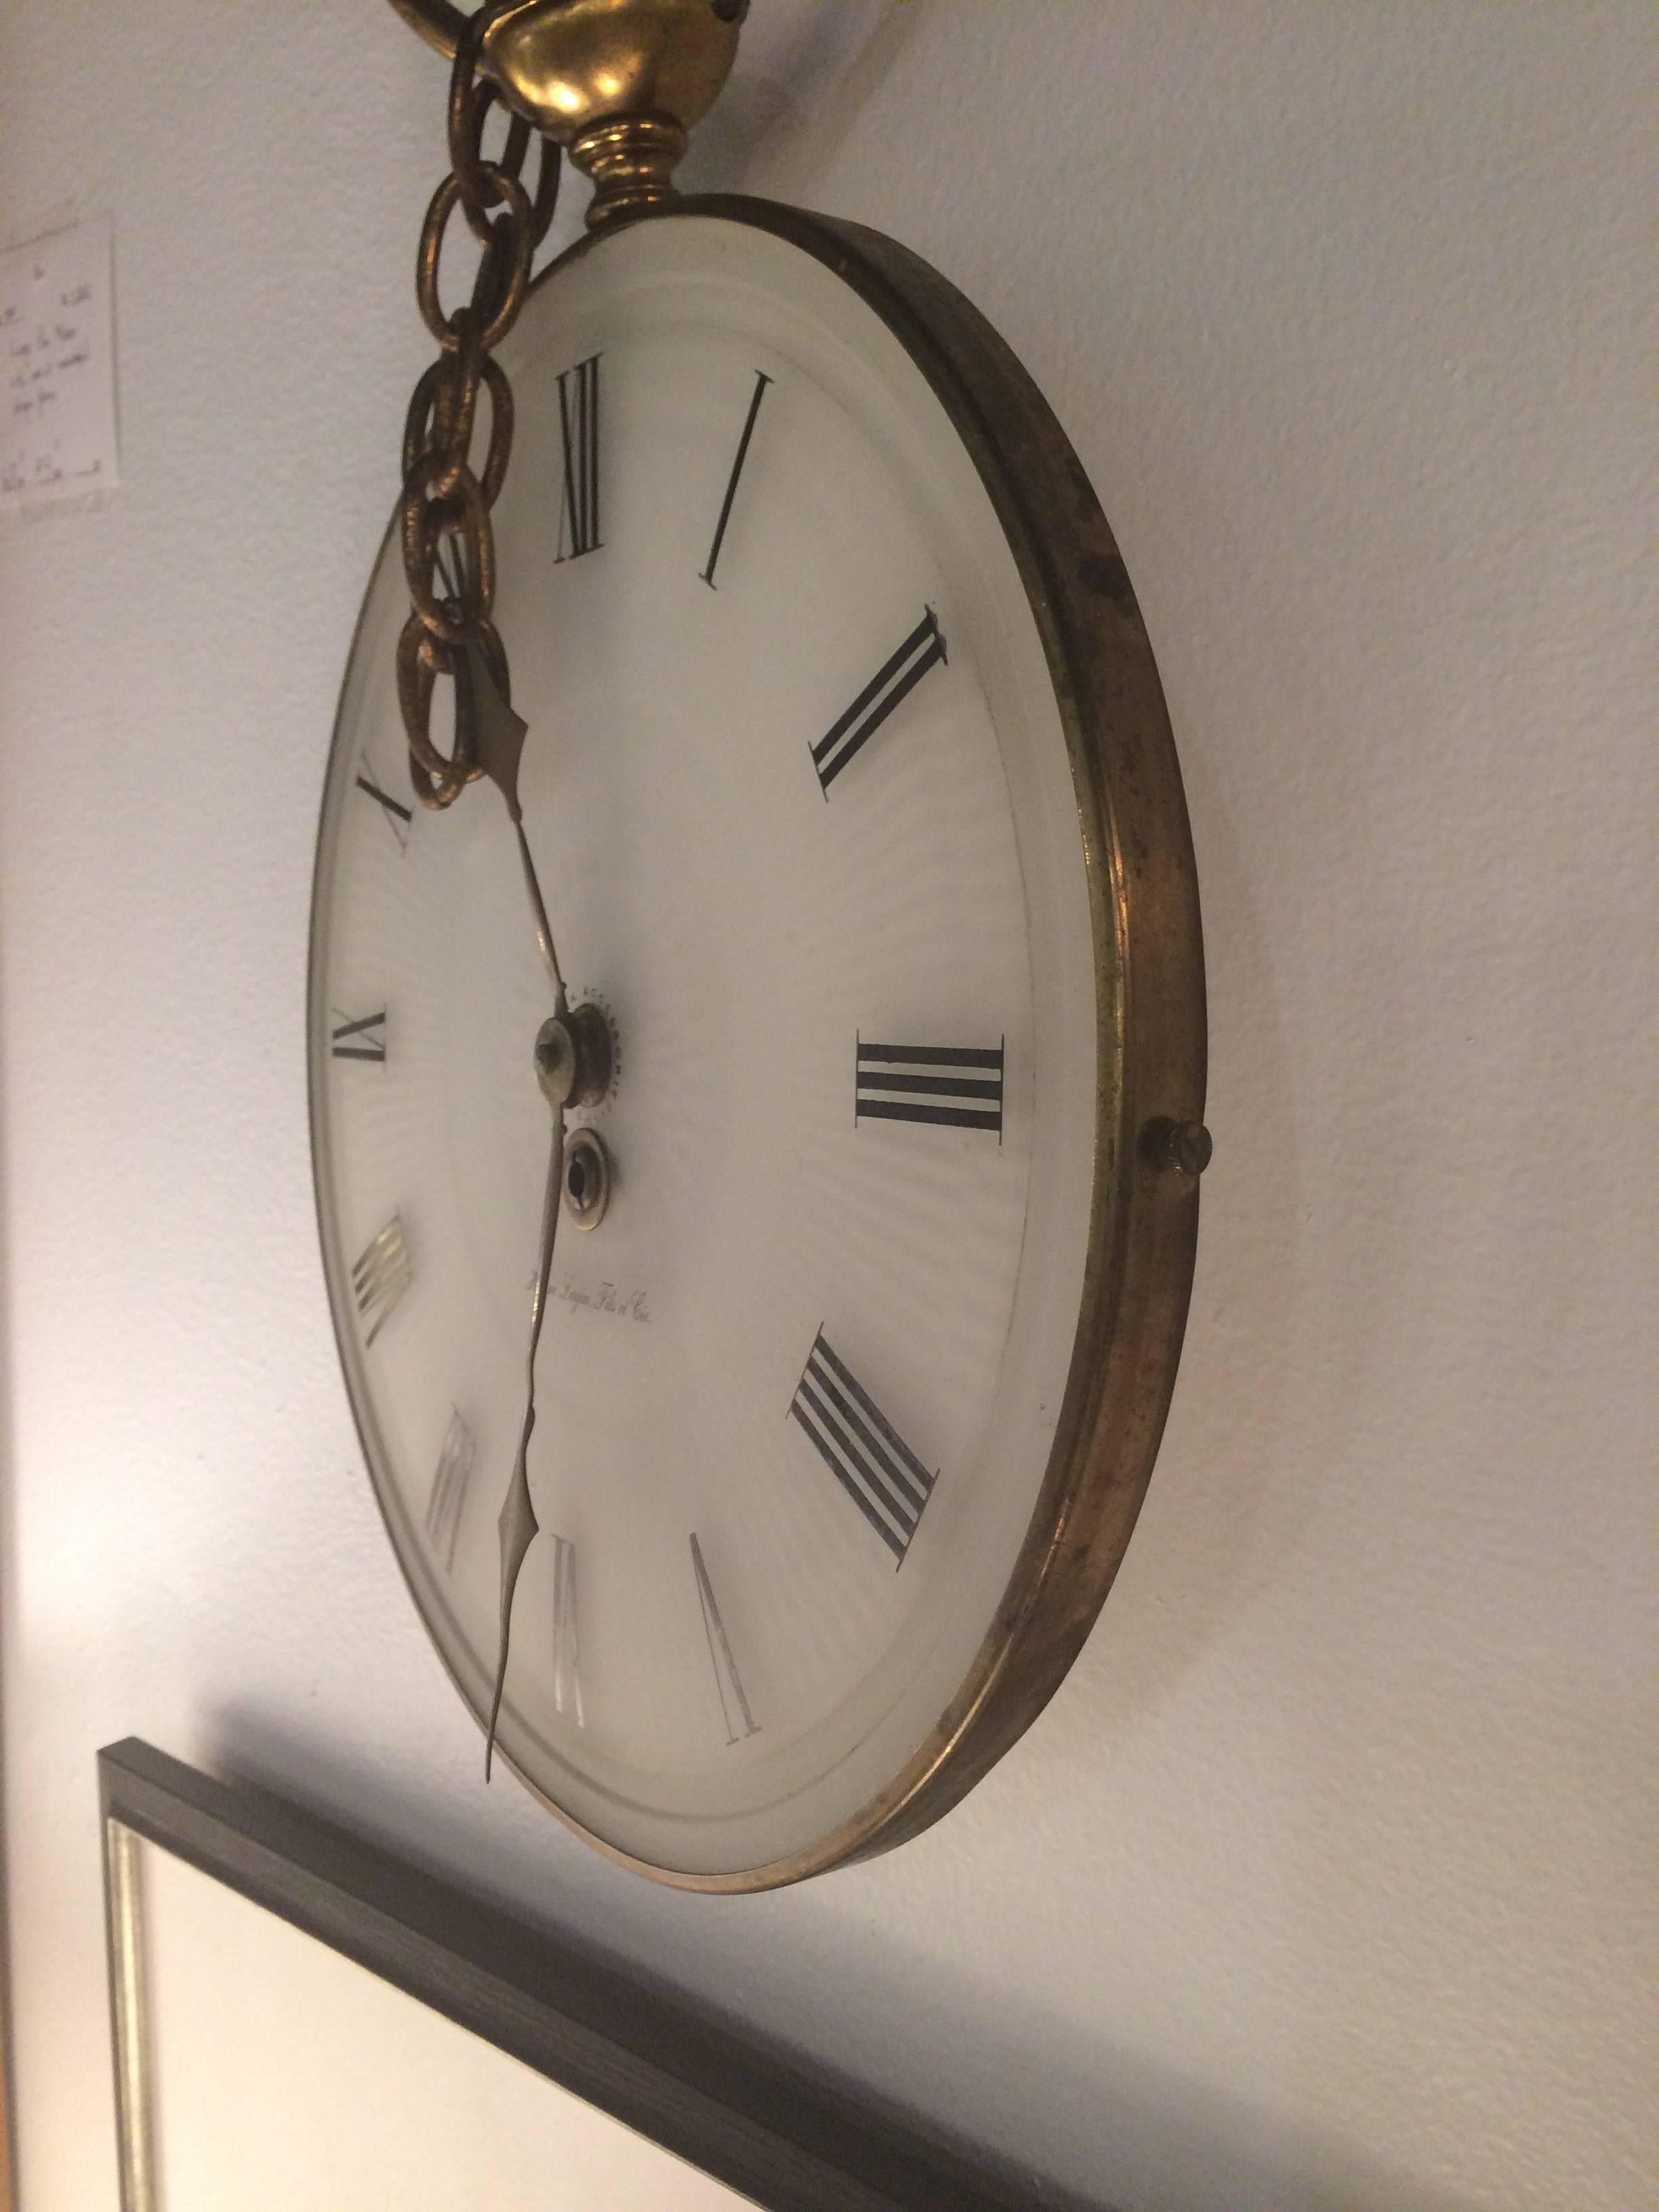 Vintage German Hanging Clock by Henri 1